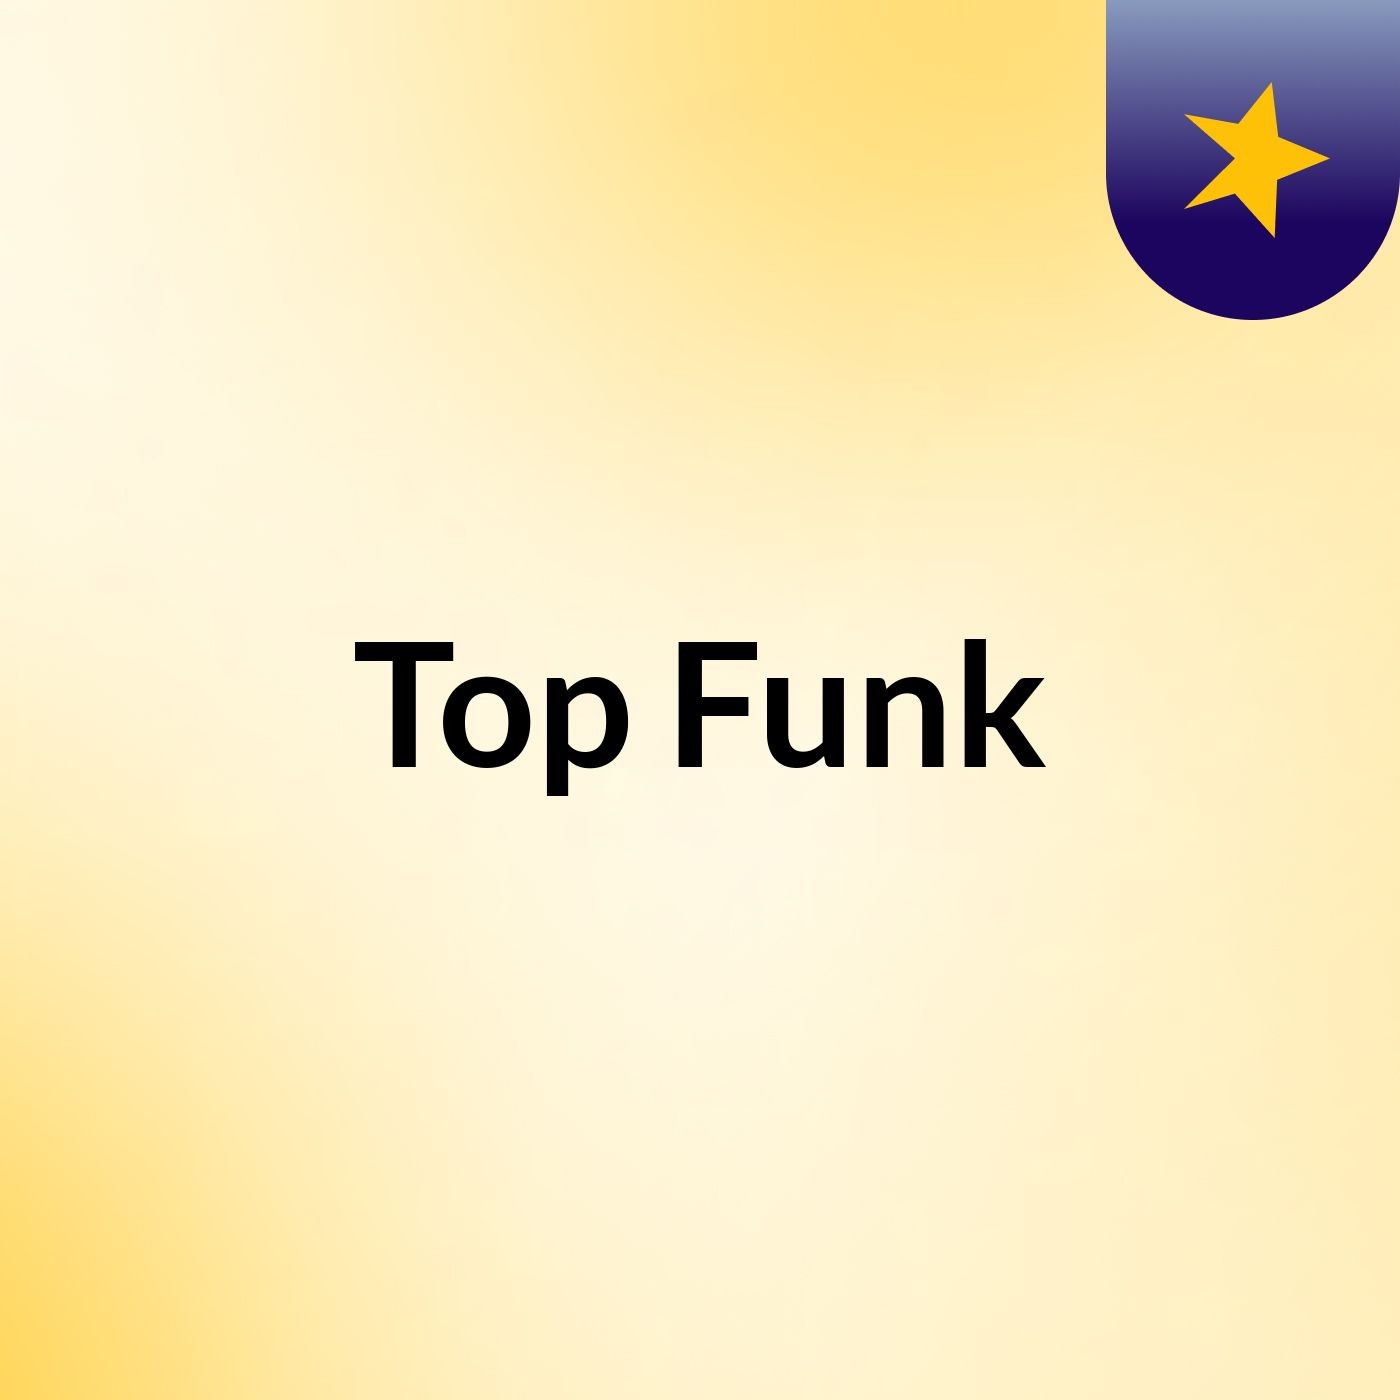 Top Funk